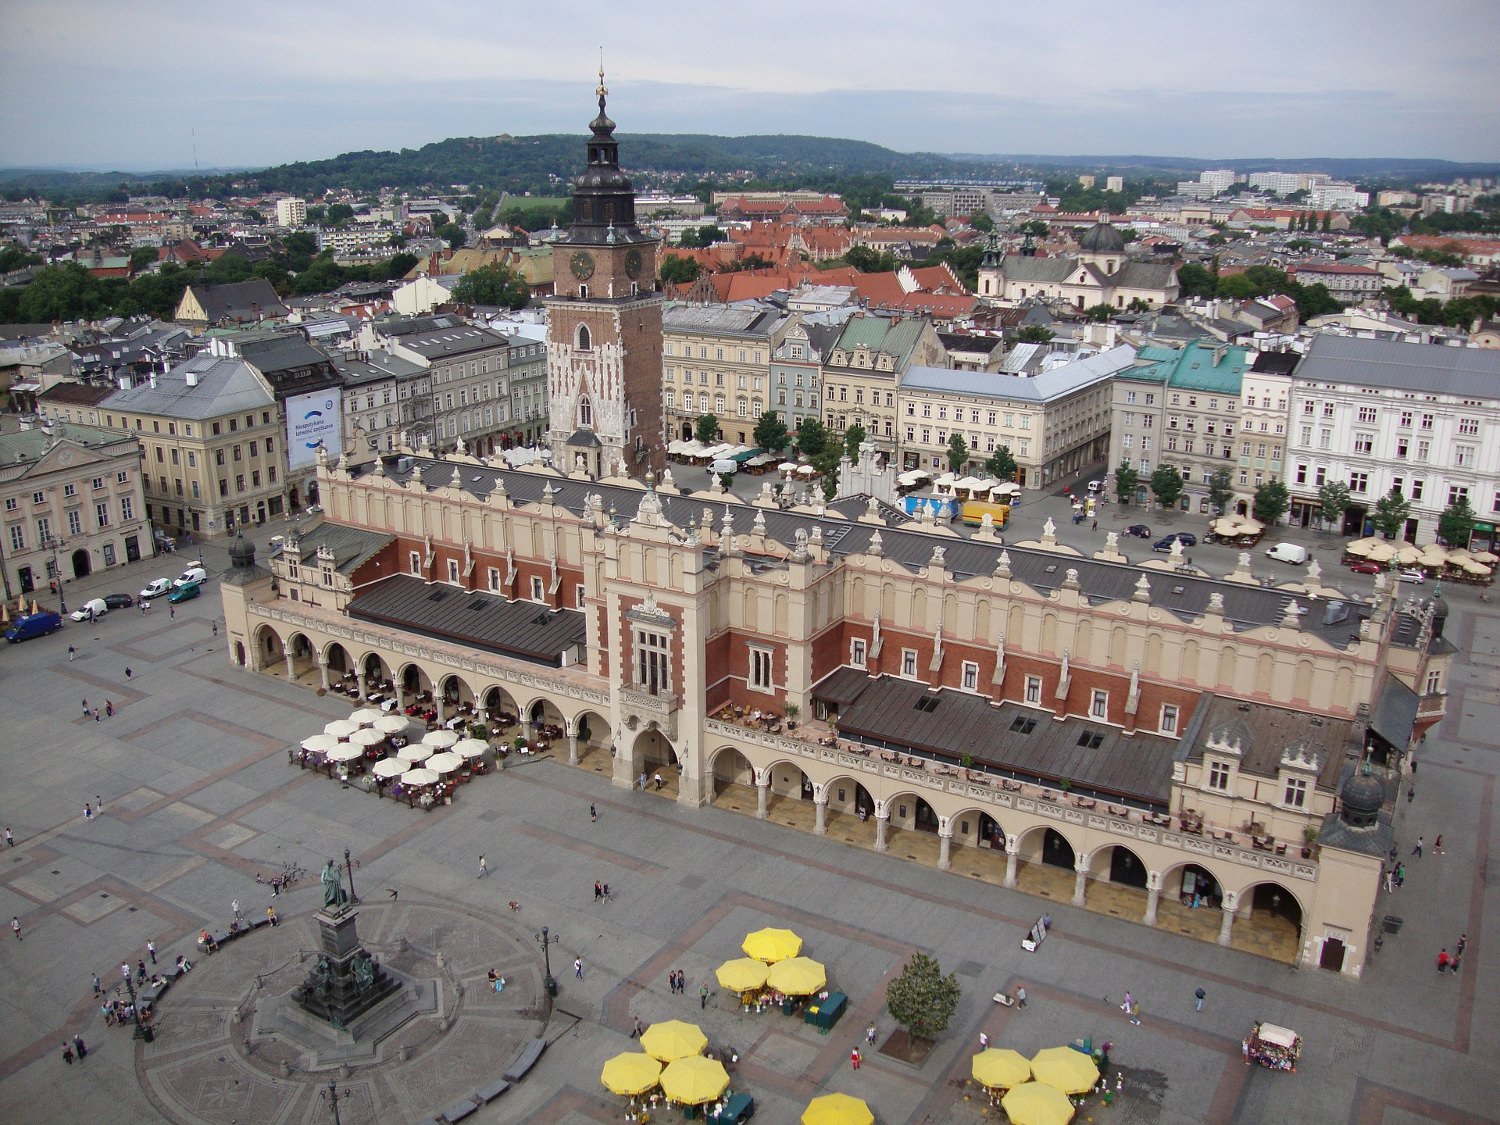 Krakow-market-square.jpg